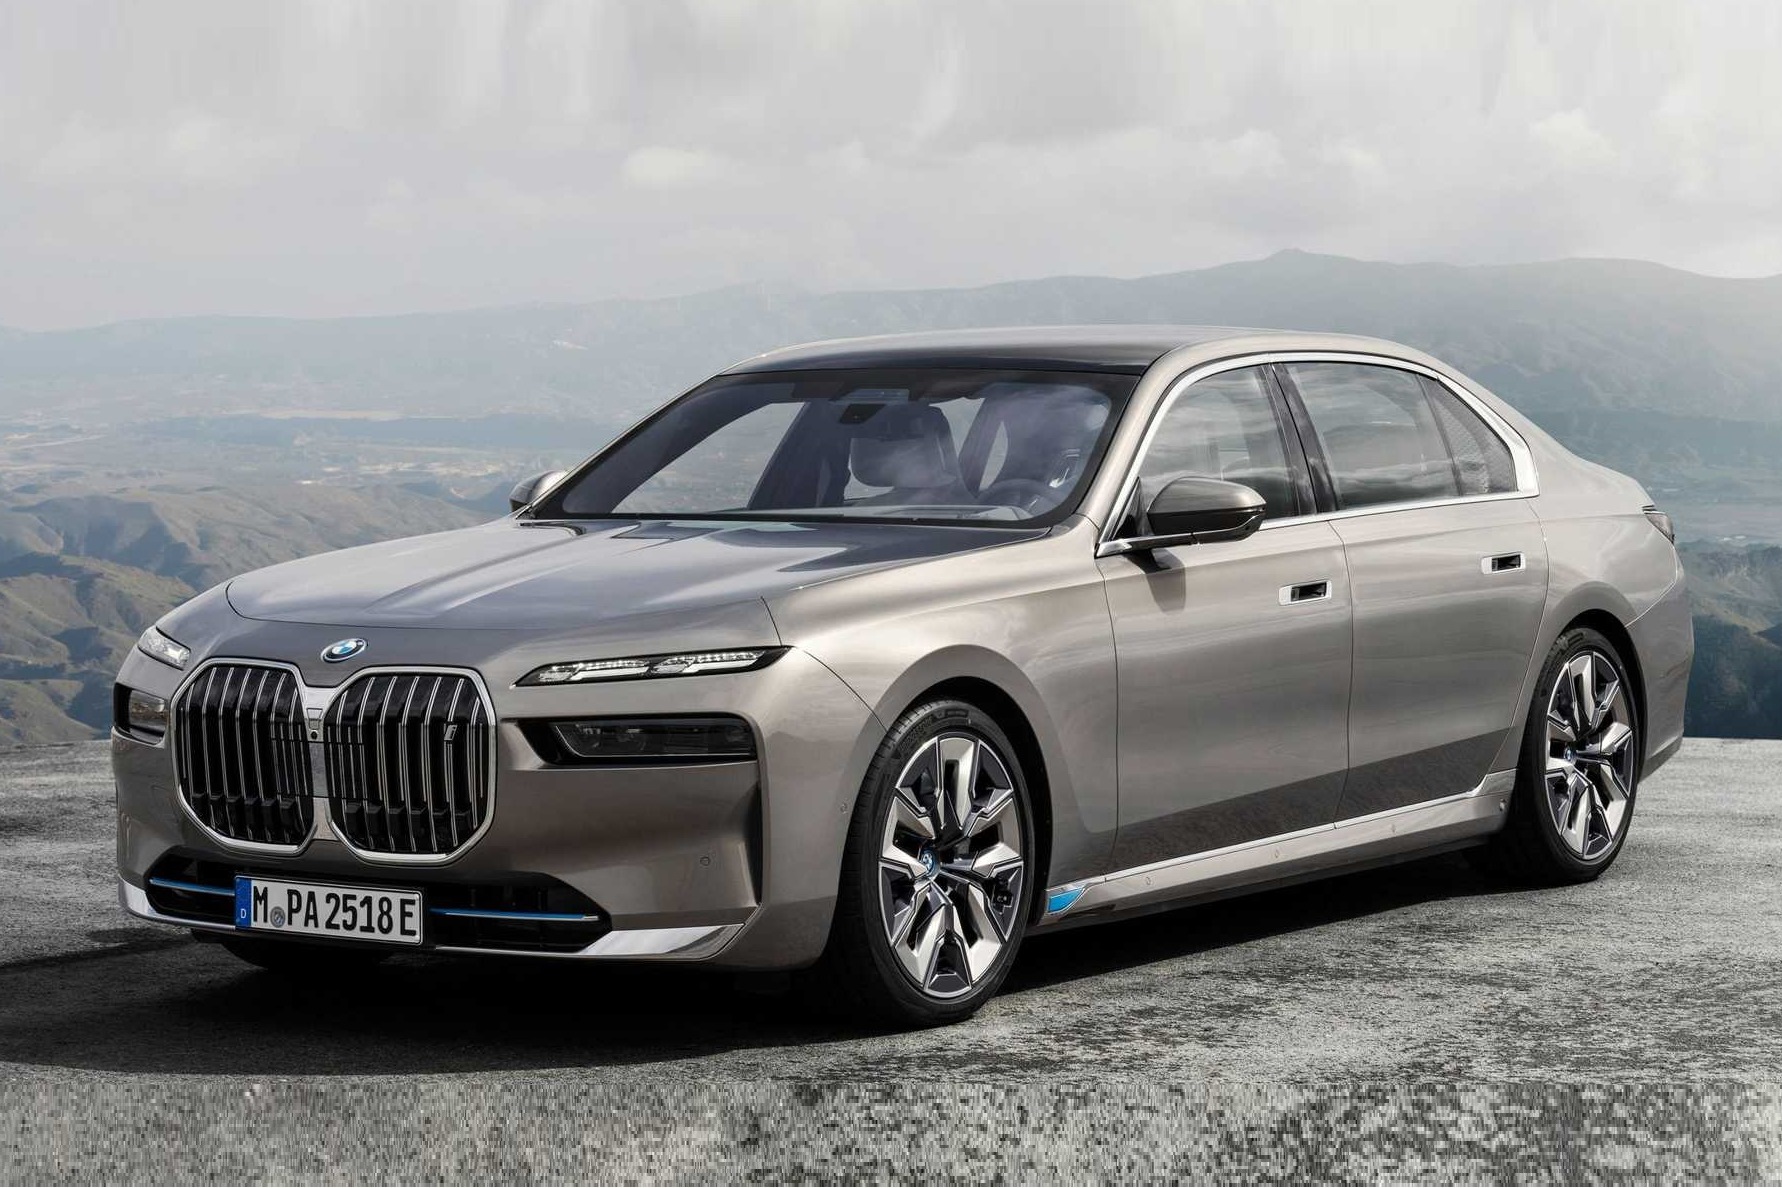 نسل جدید BMW سری 7 و i7 الکتریکی معرفی شد.  تبدیل شدن به یک محصول پیشرو